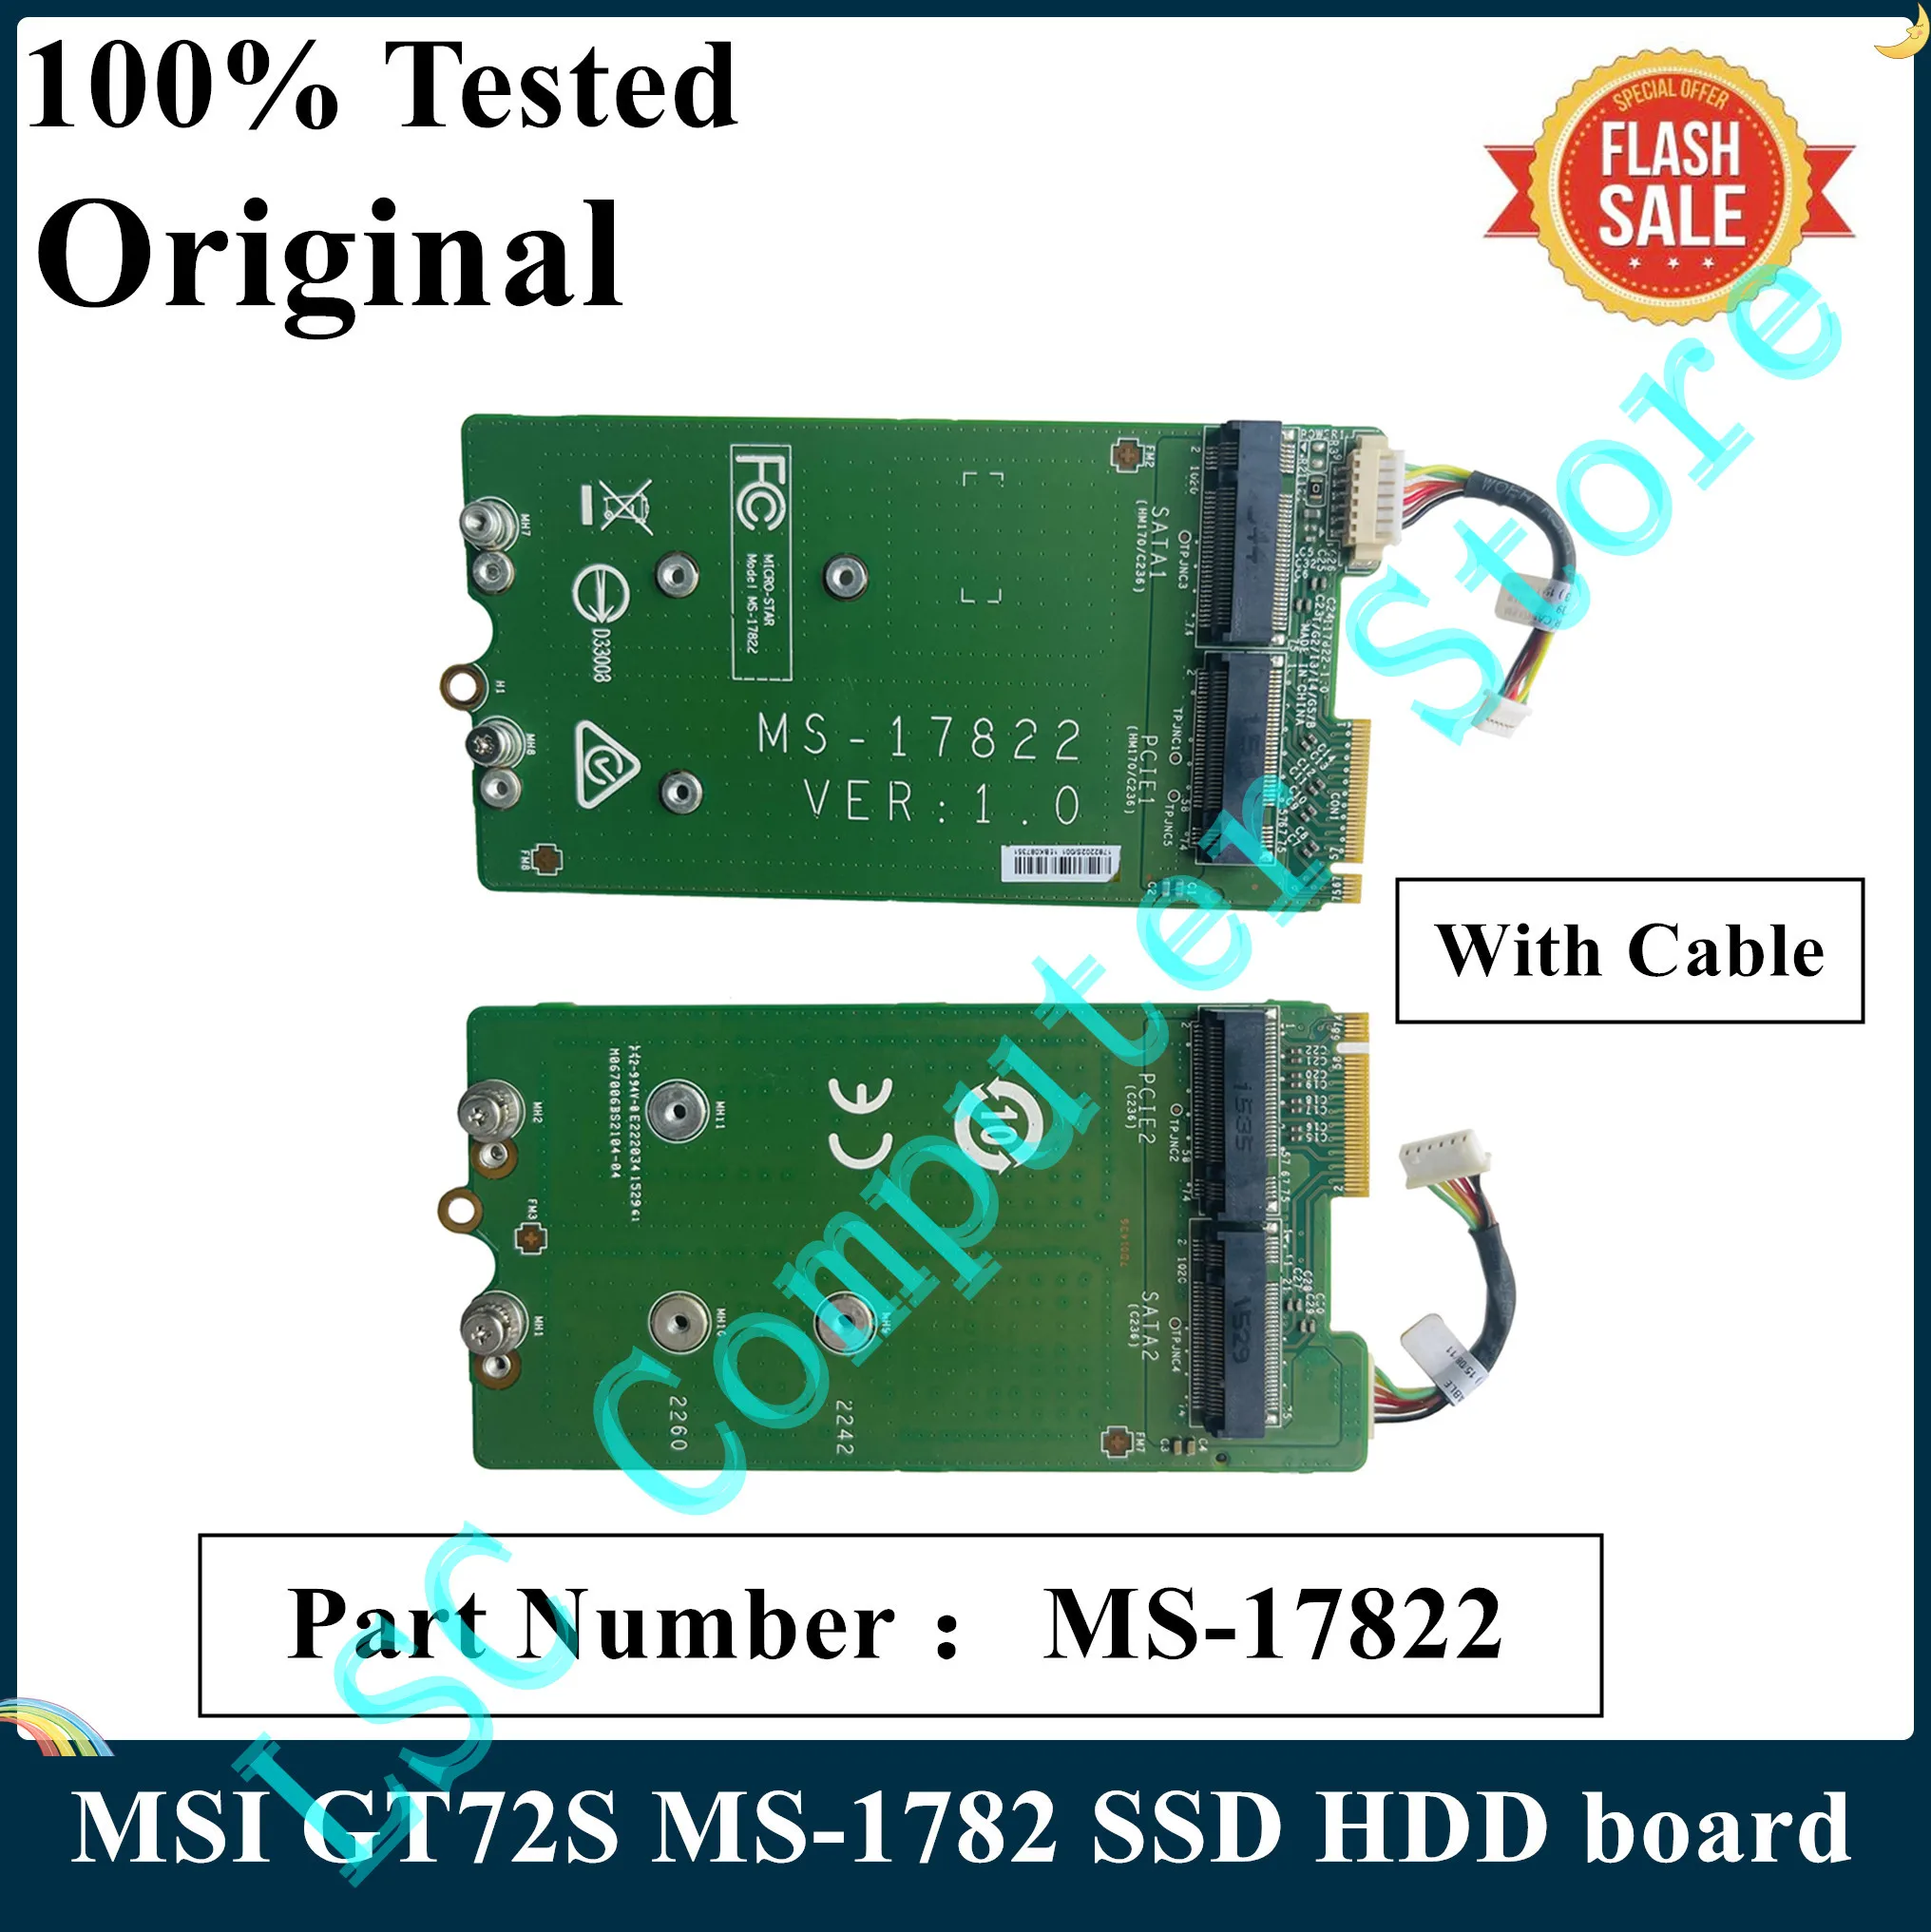 LSC Оригинал для MSI GT72S MS-1782 SSD HDD Интерфейсная плата ЖЕСТКОГО ДИСКА С КАБЕЛЕМ 2 M.2 ПОРТА NVME SATA + 2 ПОРТА PCI-E MS-17822